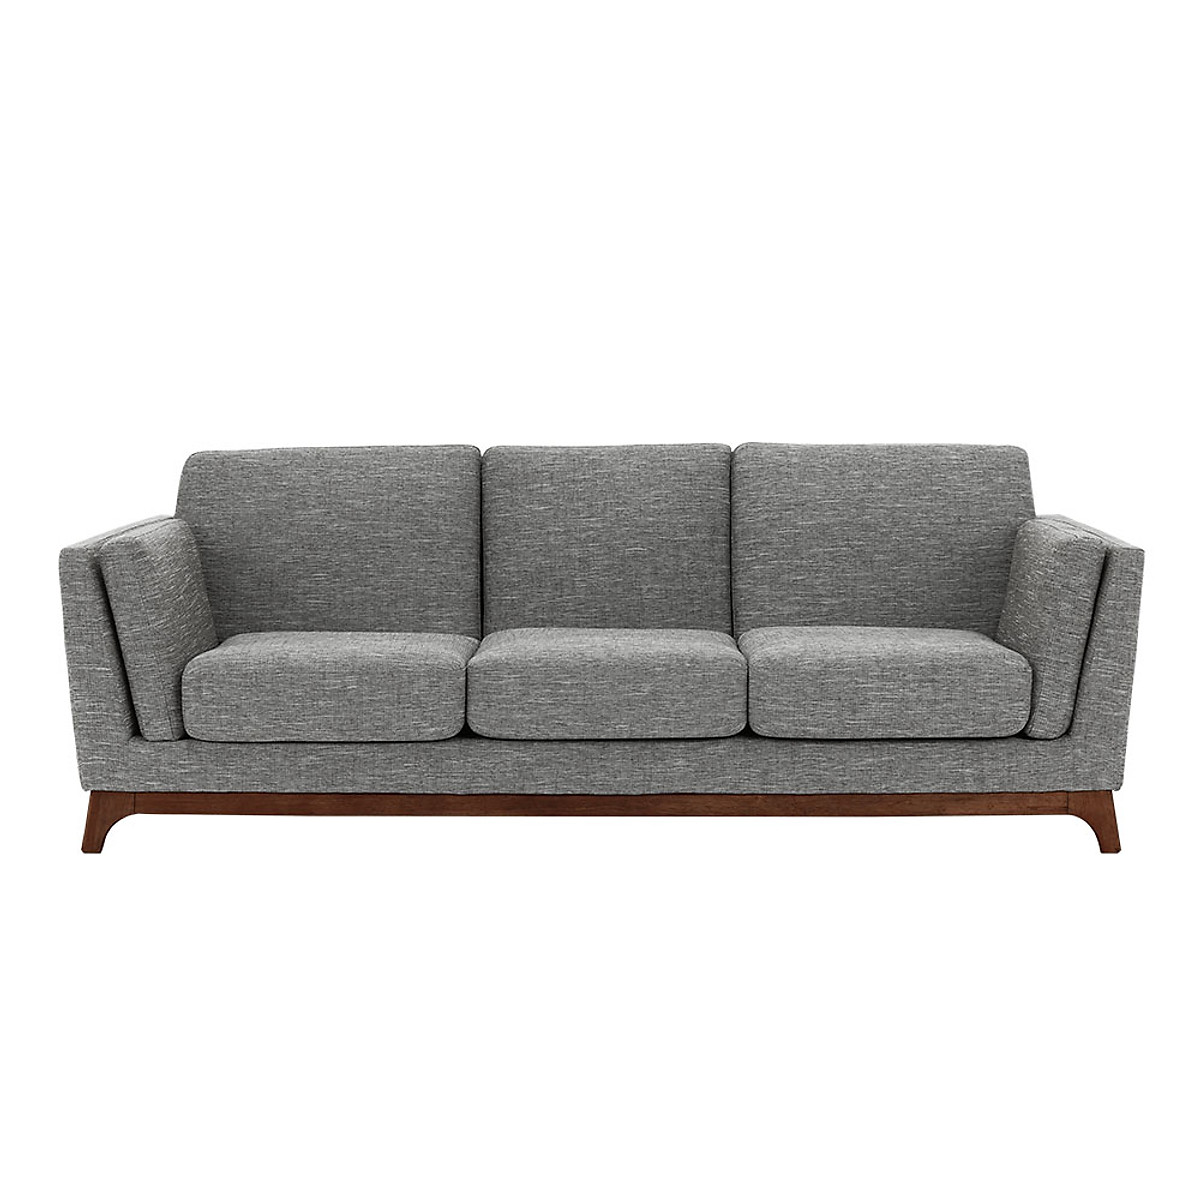 Sofa băng Elijah - 2m2